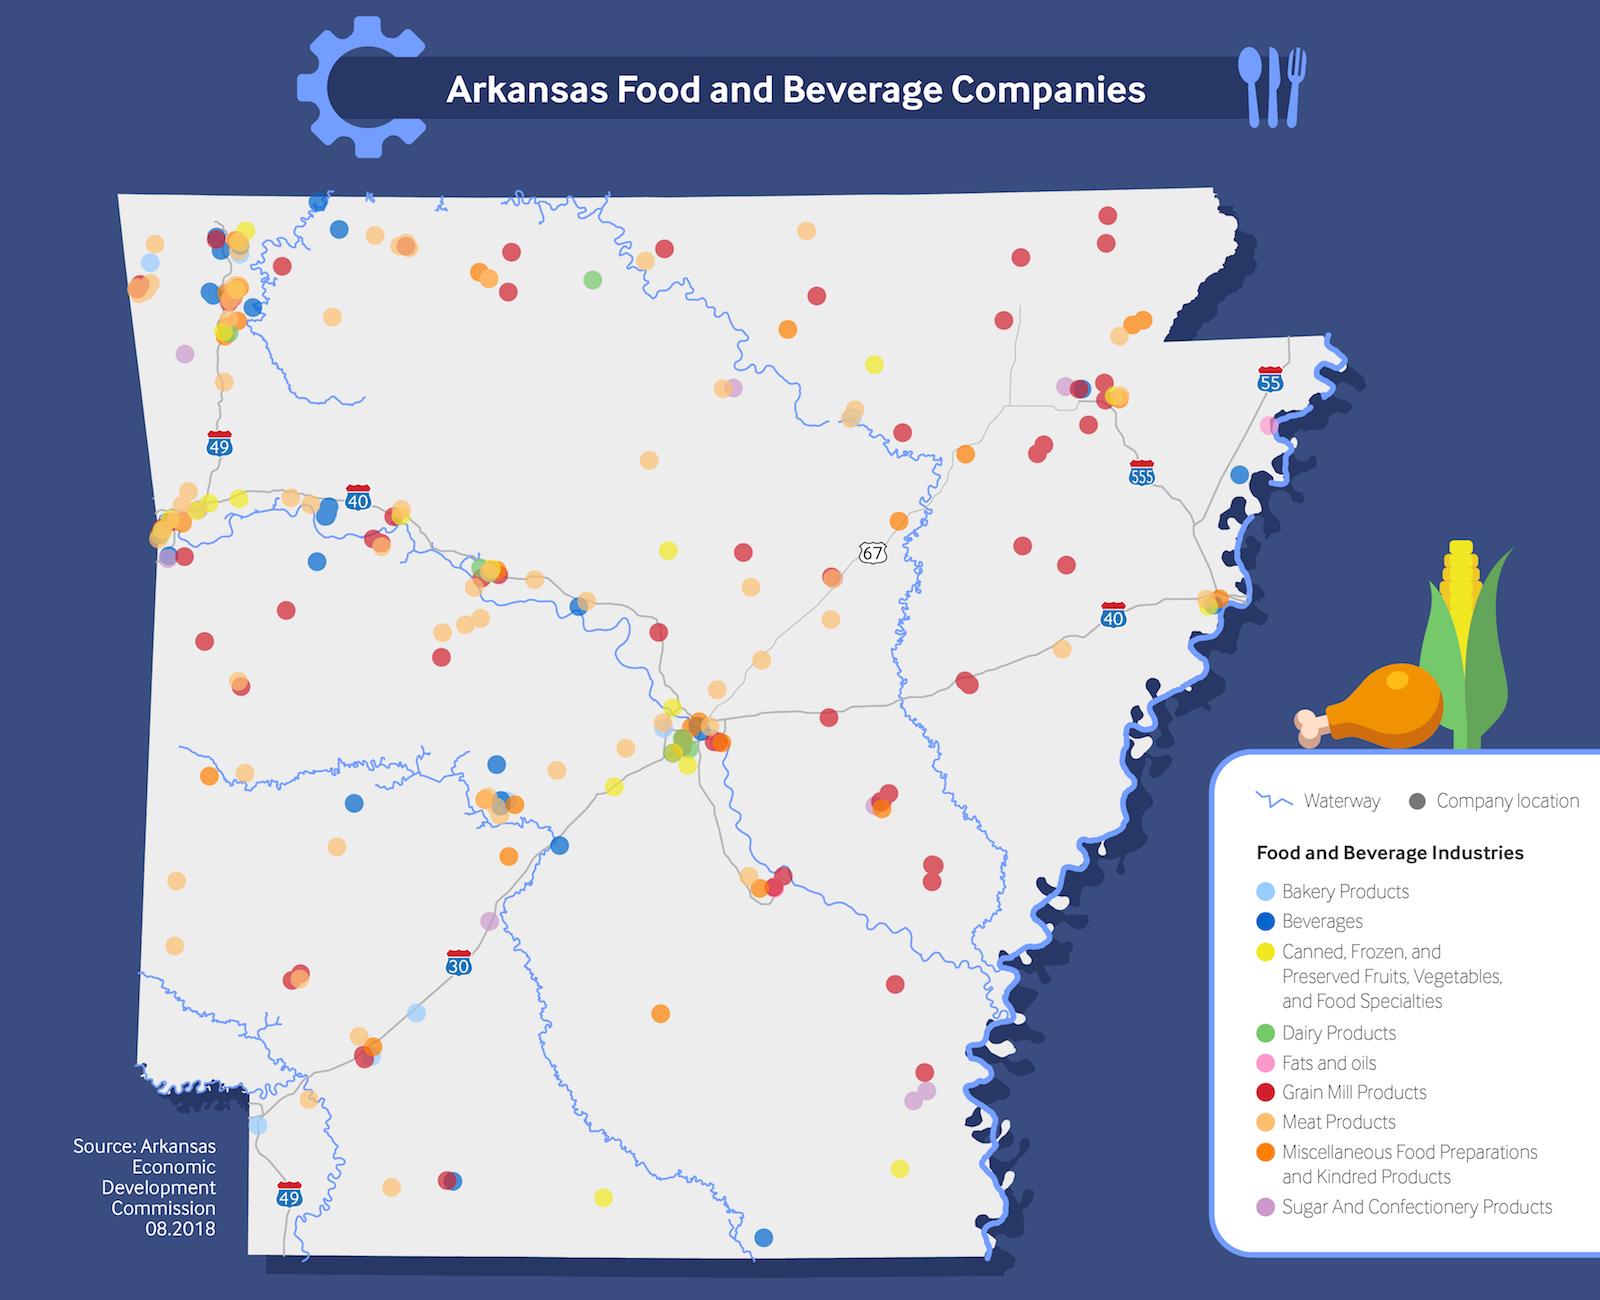 Food & Beverage Companies in Arkansas